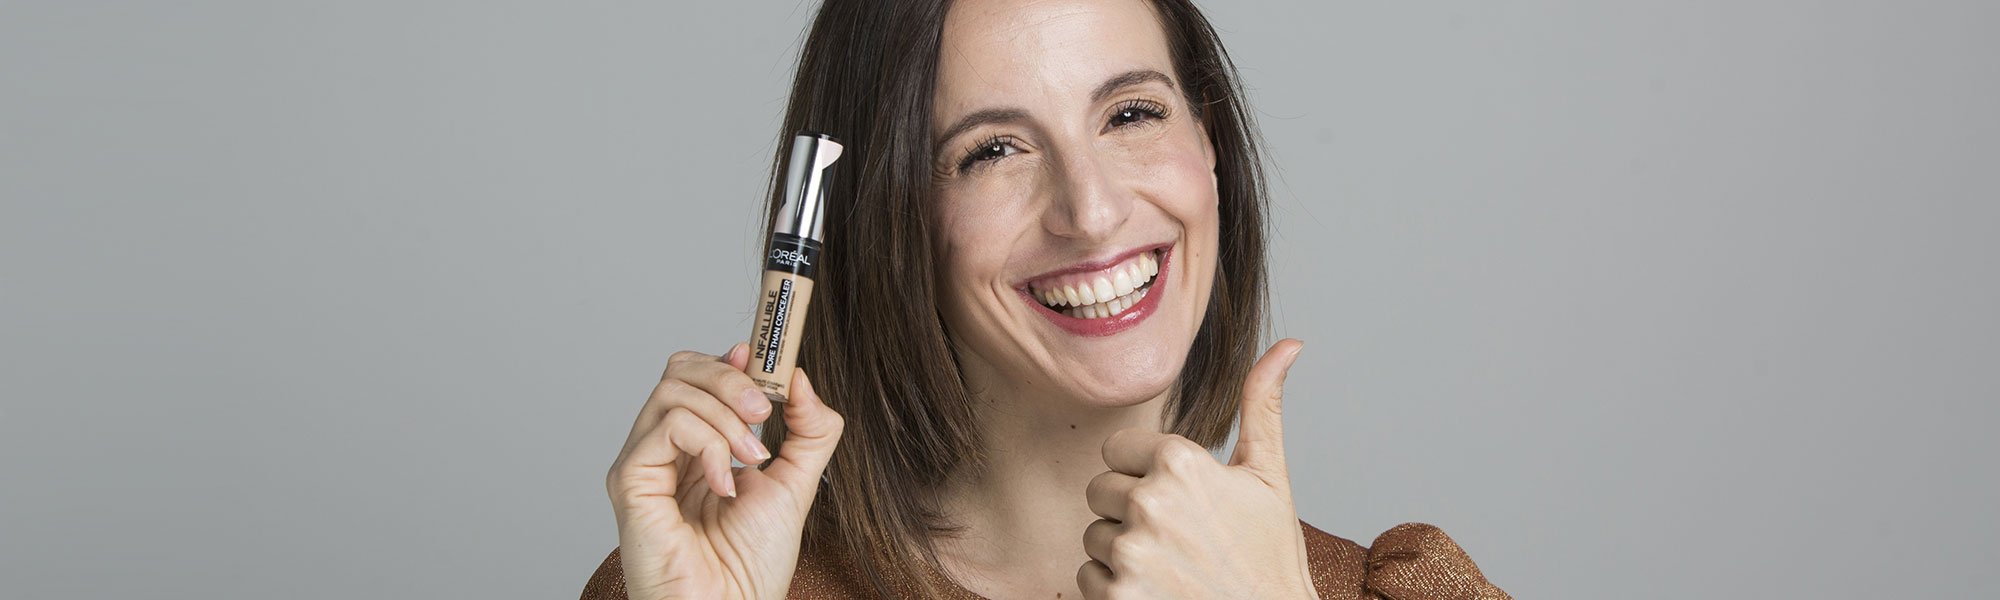 Te dejamos 7 ideas para regalar maquillaje ¡y hacerlo bien! ¿Un ejemplo? El corrector More Than Concealer de L’Oréal Paris será un regalo top para alguien que sufra de ojeras a diario.